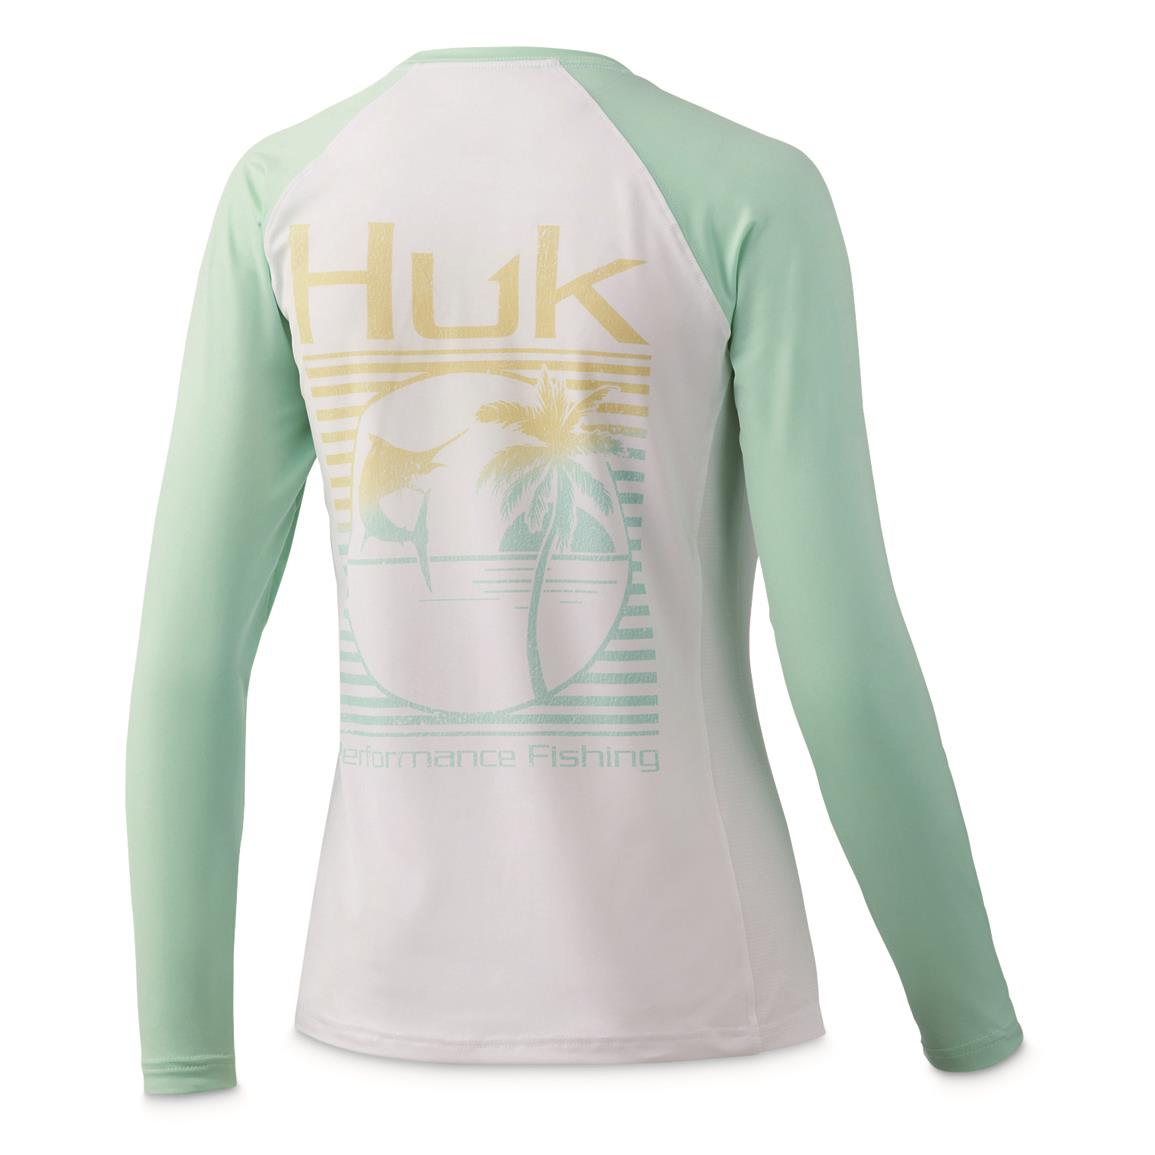 Huk Women's Marlin Palm Horizon Double Header Long-Sleeved Performance Shirt, Beach Glass